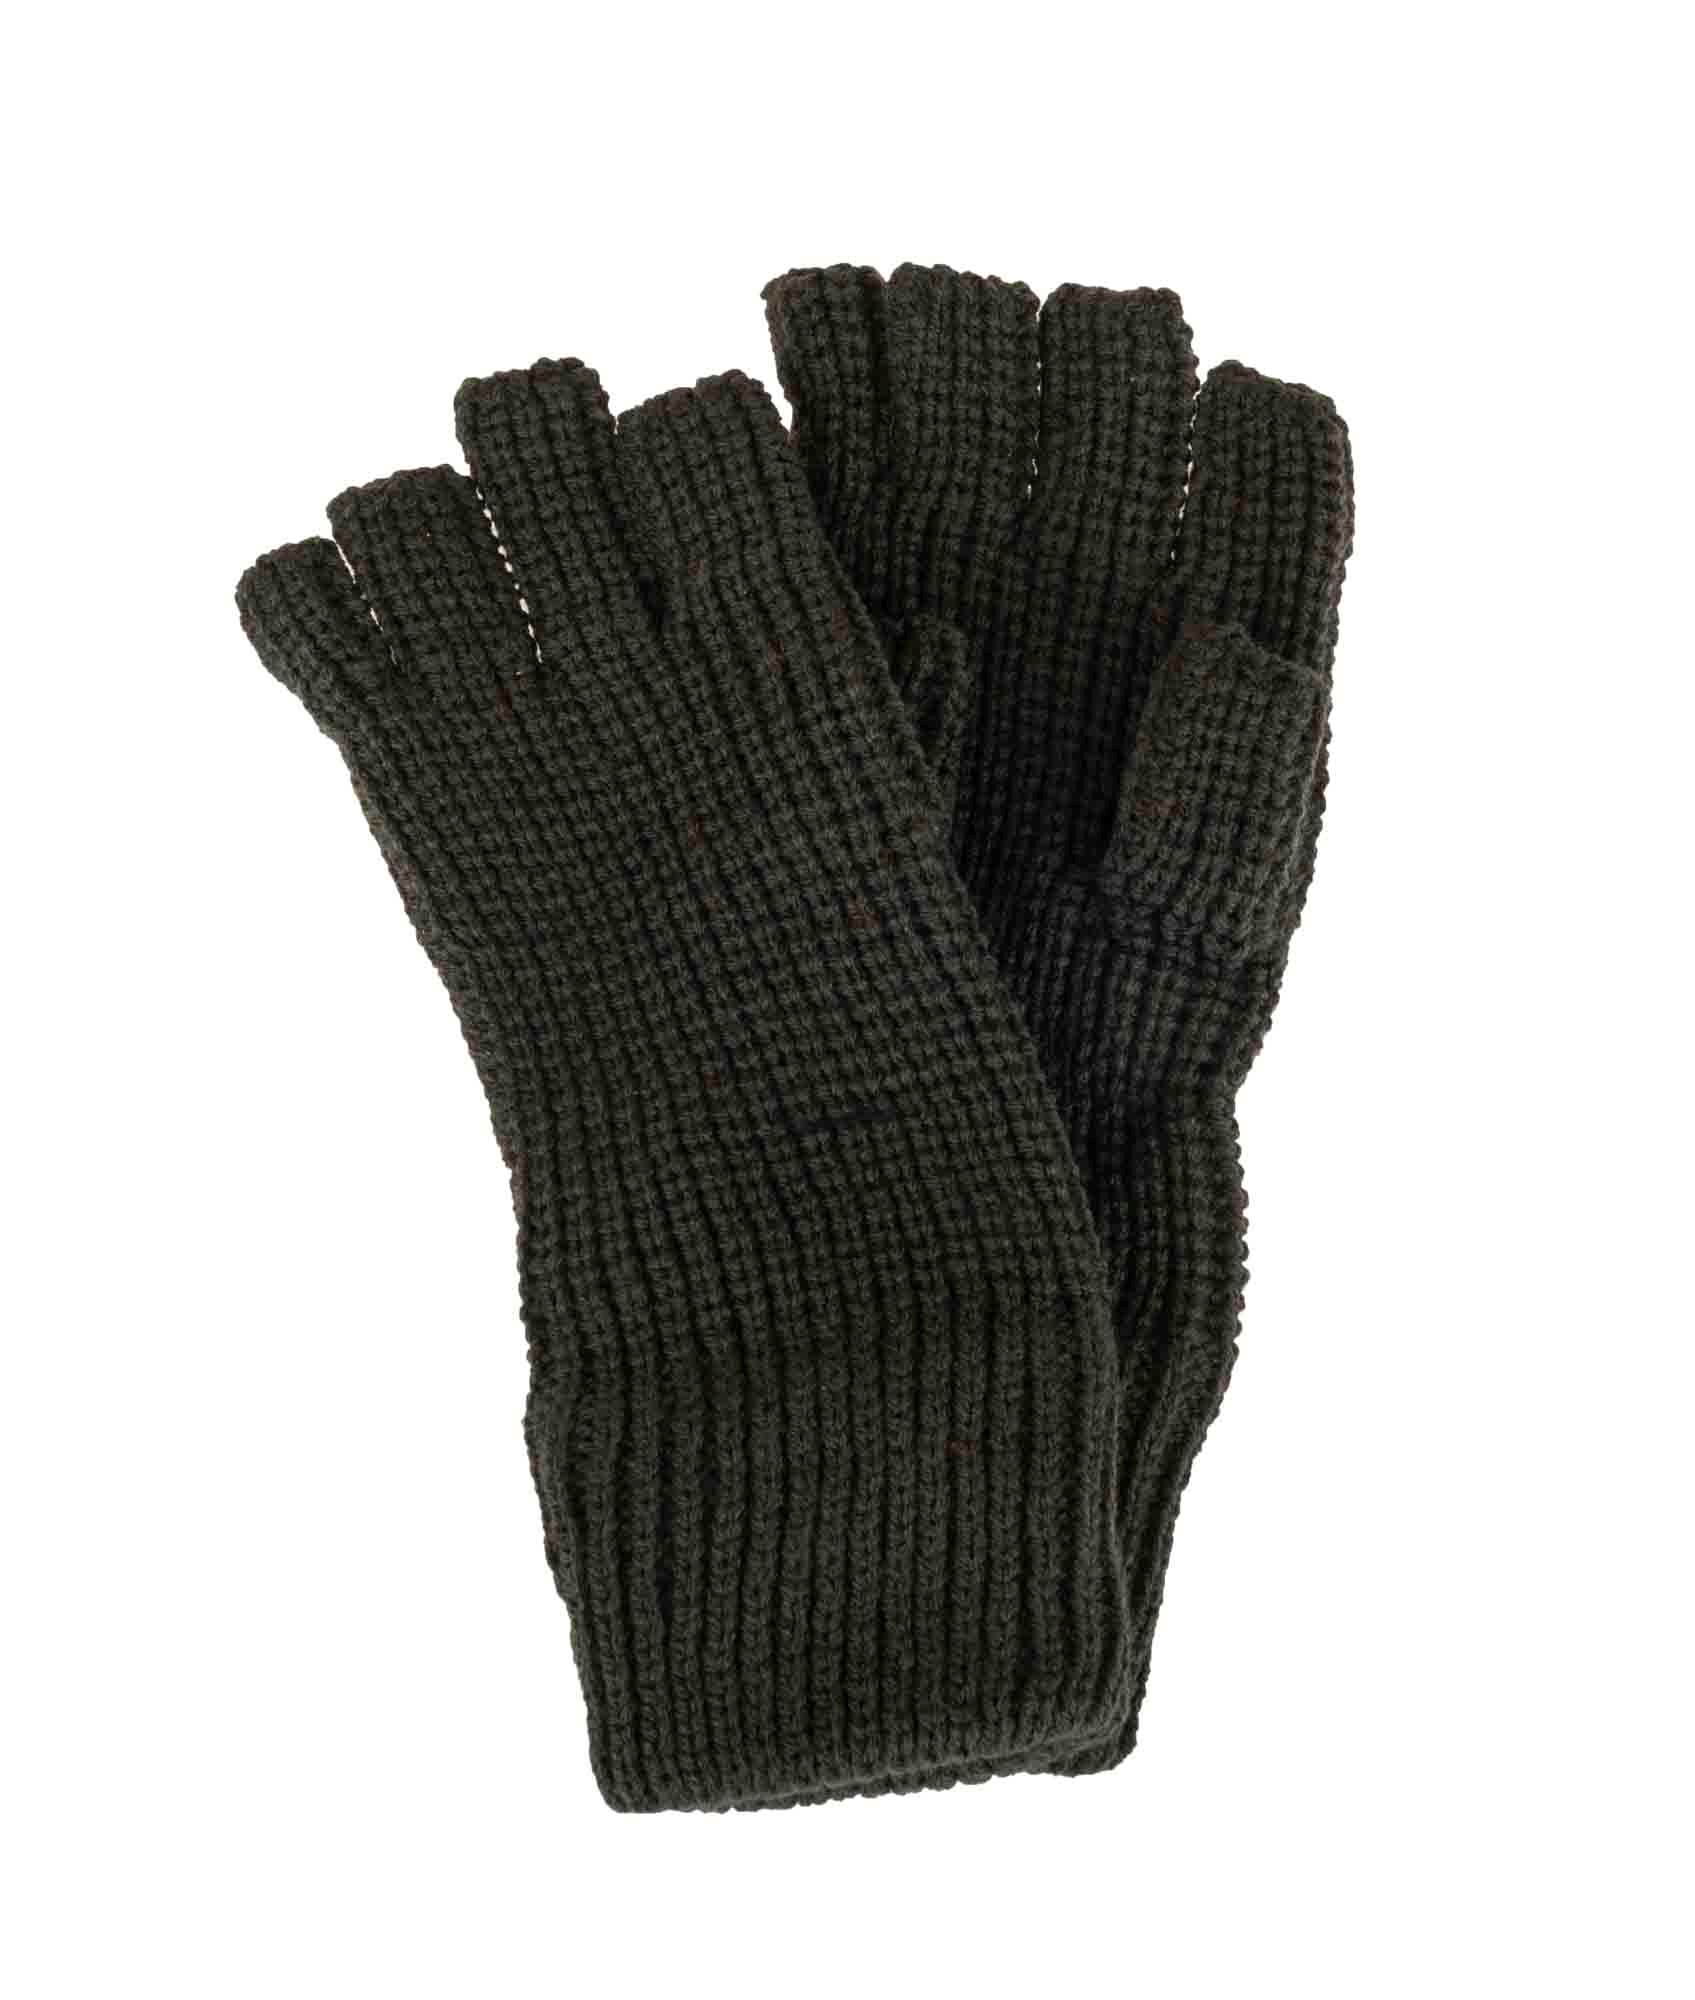 Køb Fingerløse handsker online her | 417.dk